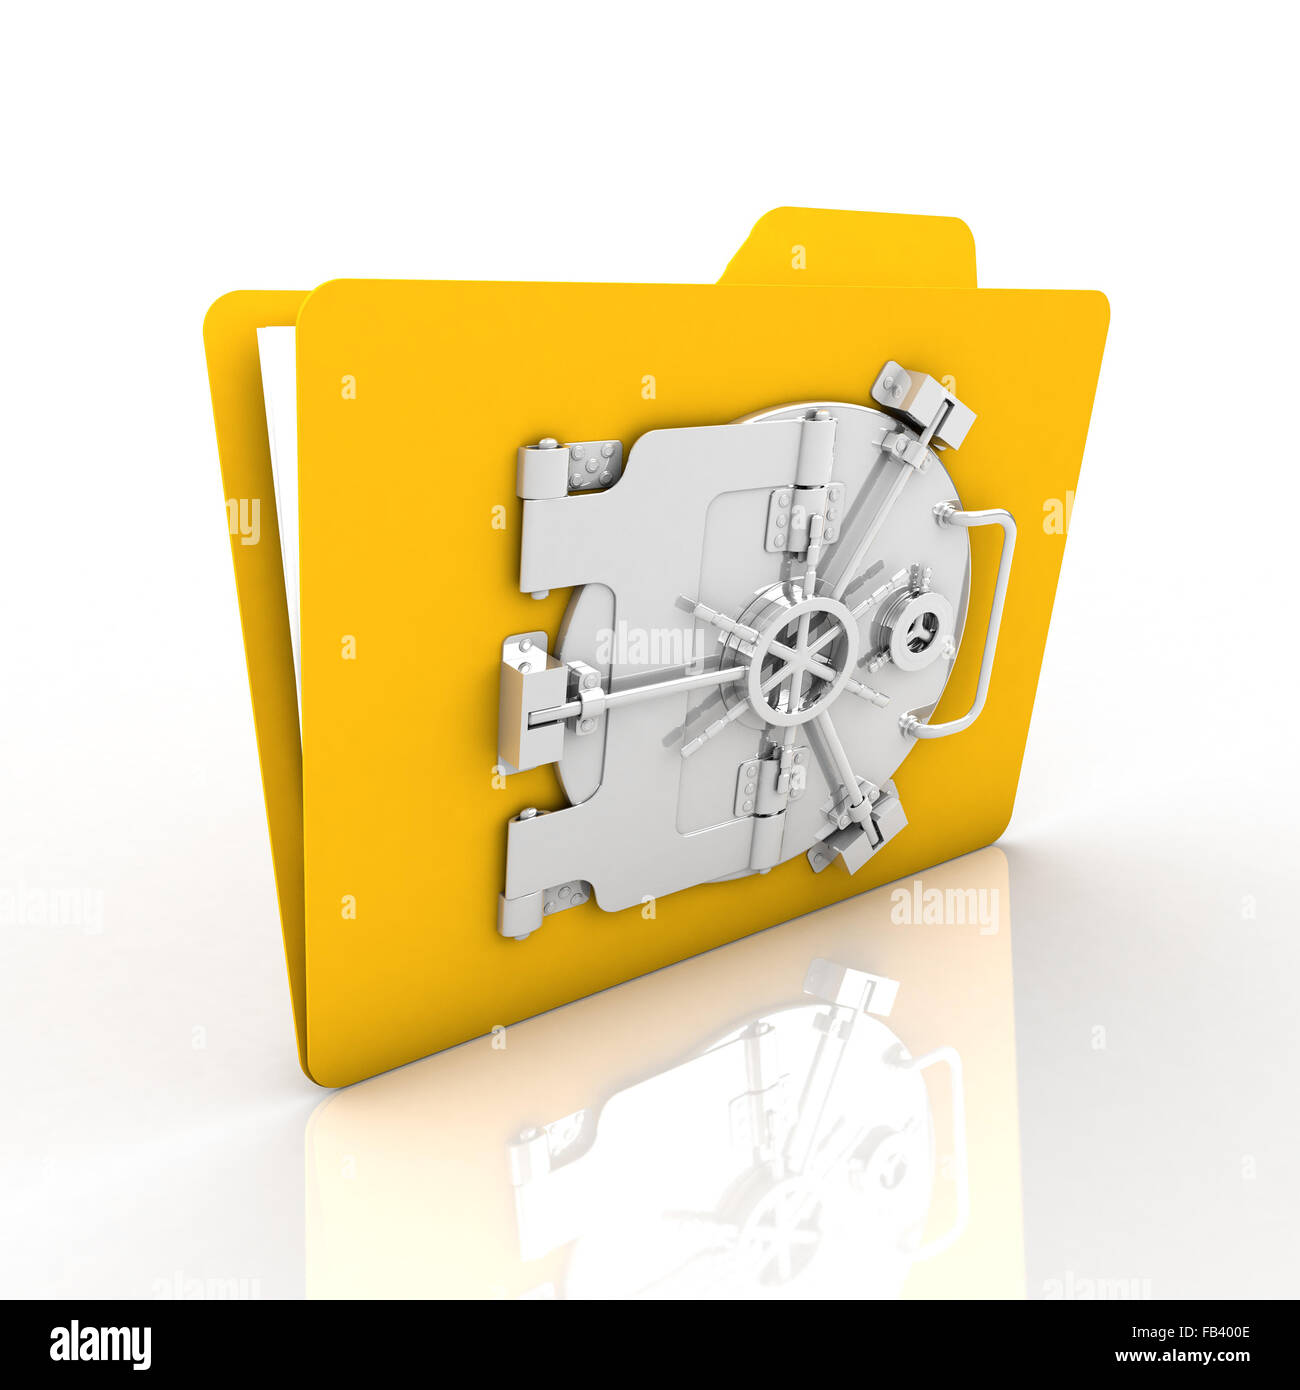 Datei-Verschlüsselung für die Sicherheit ist sehr sicher. Wir betonen, dass gelbe Ordner. Stockfoto